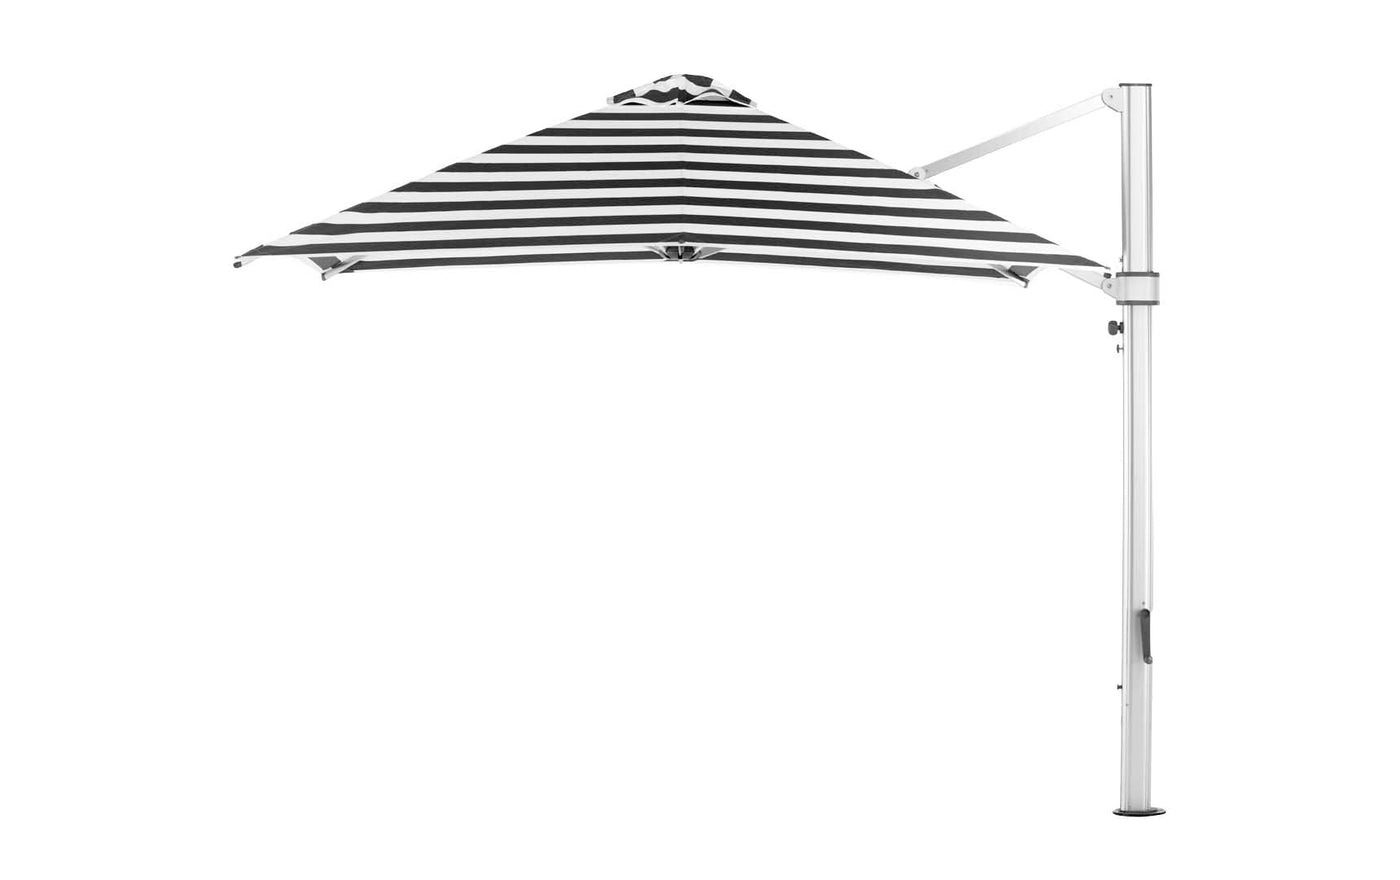 Ultra Cantilever Umbrella - 10' Square